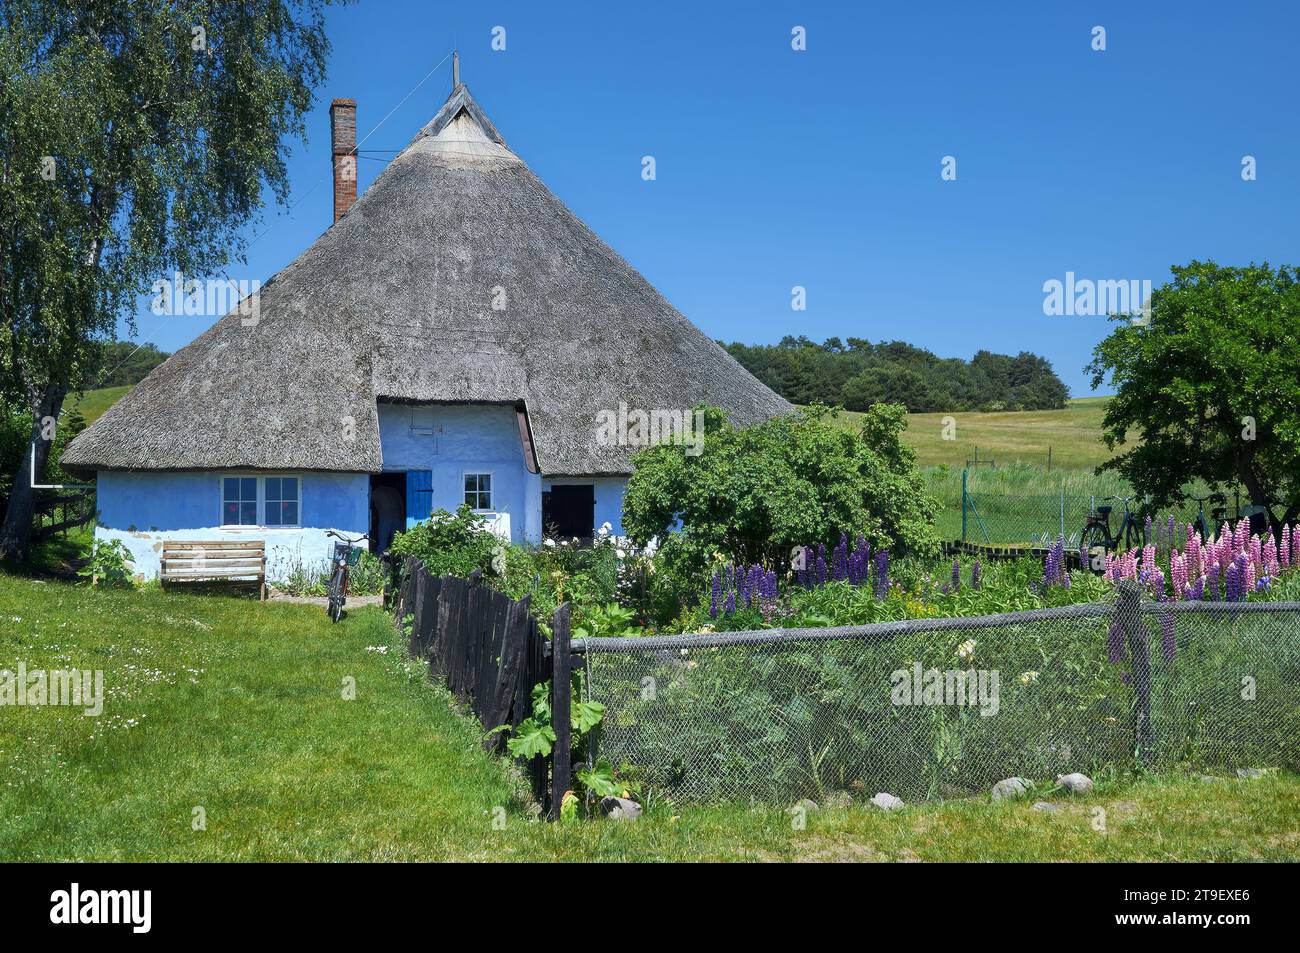 La storica Casa dei preti della Vedova chiamata Pfarrwitwenhaus, Gross Zicker, Ruegen, Mar baltico, Meclemburgo, Pomerania Occidentale, Germania Foto Stock